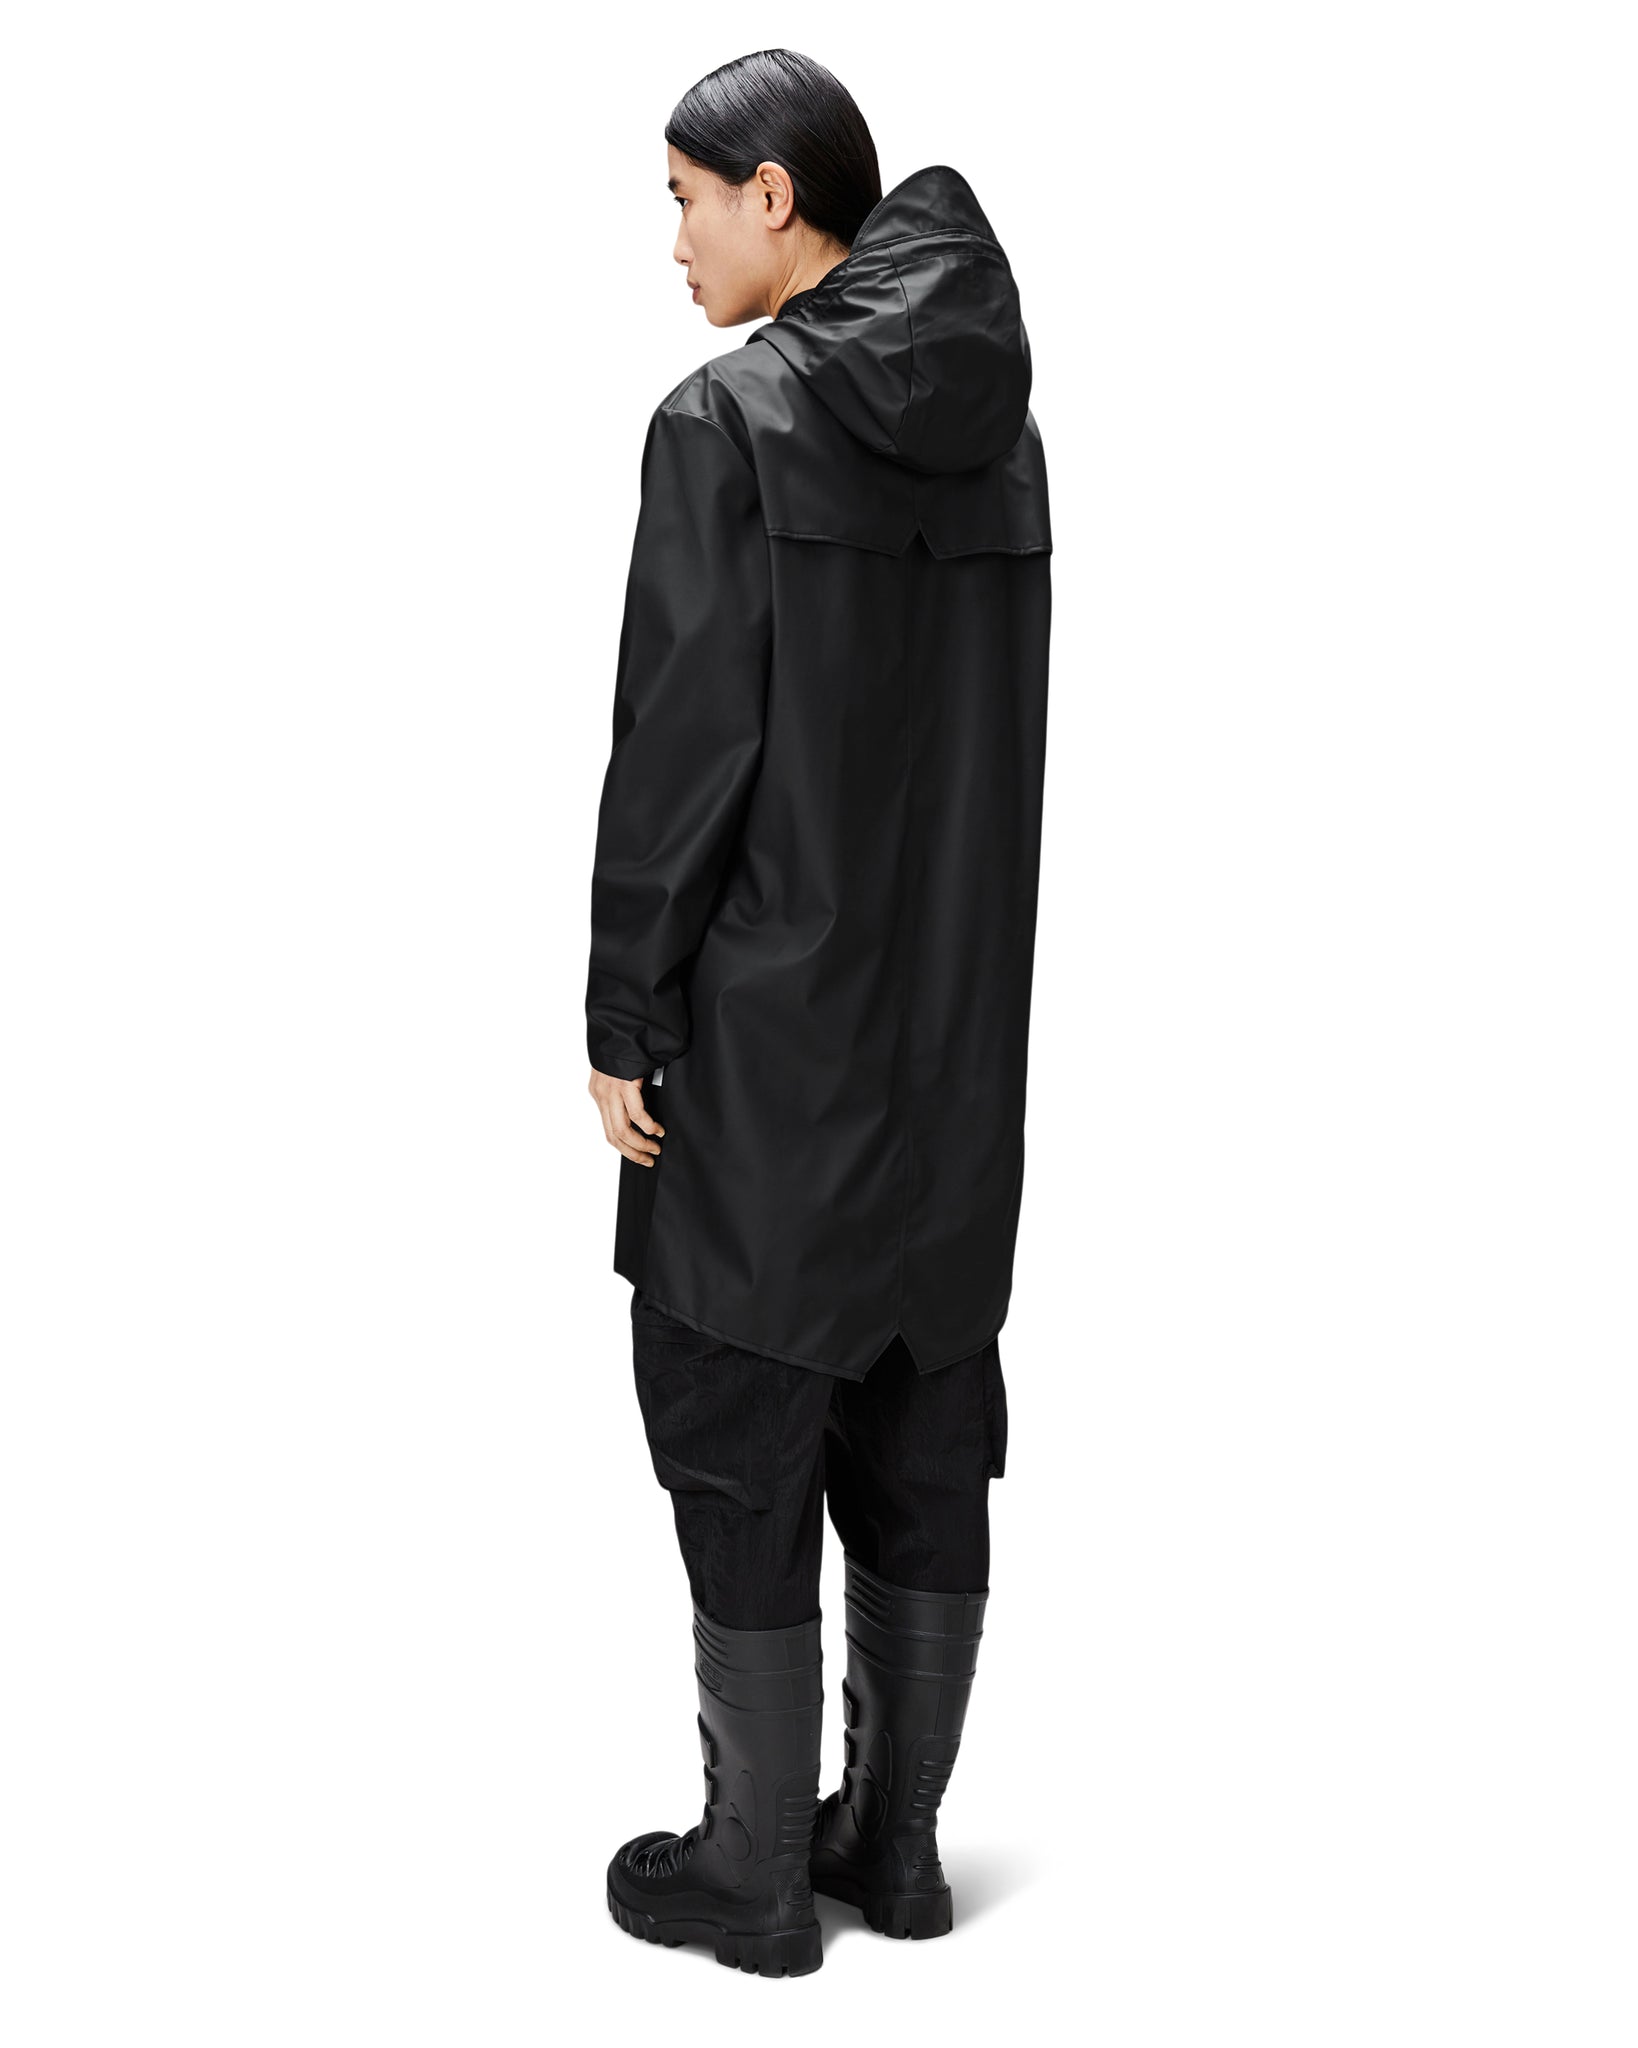 Chubasquero Long Jacket - Black (Unisex)